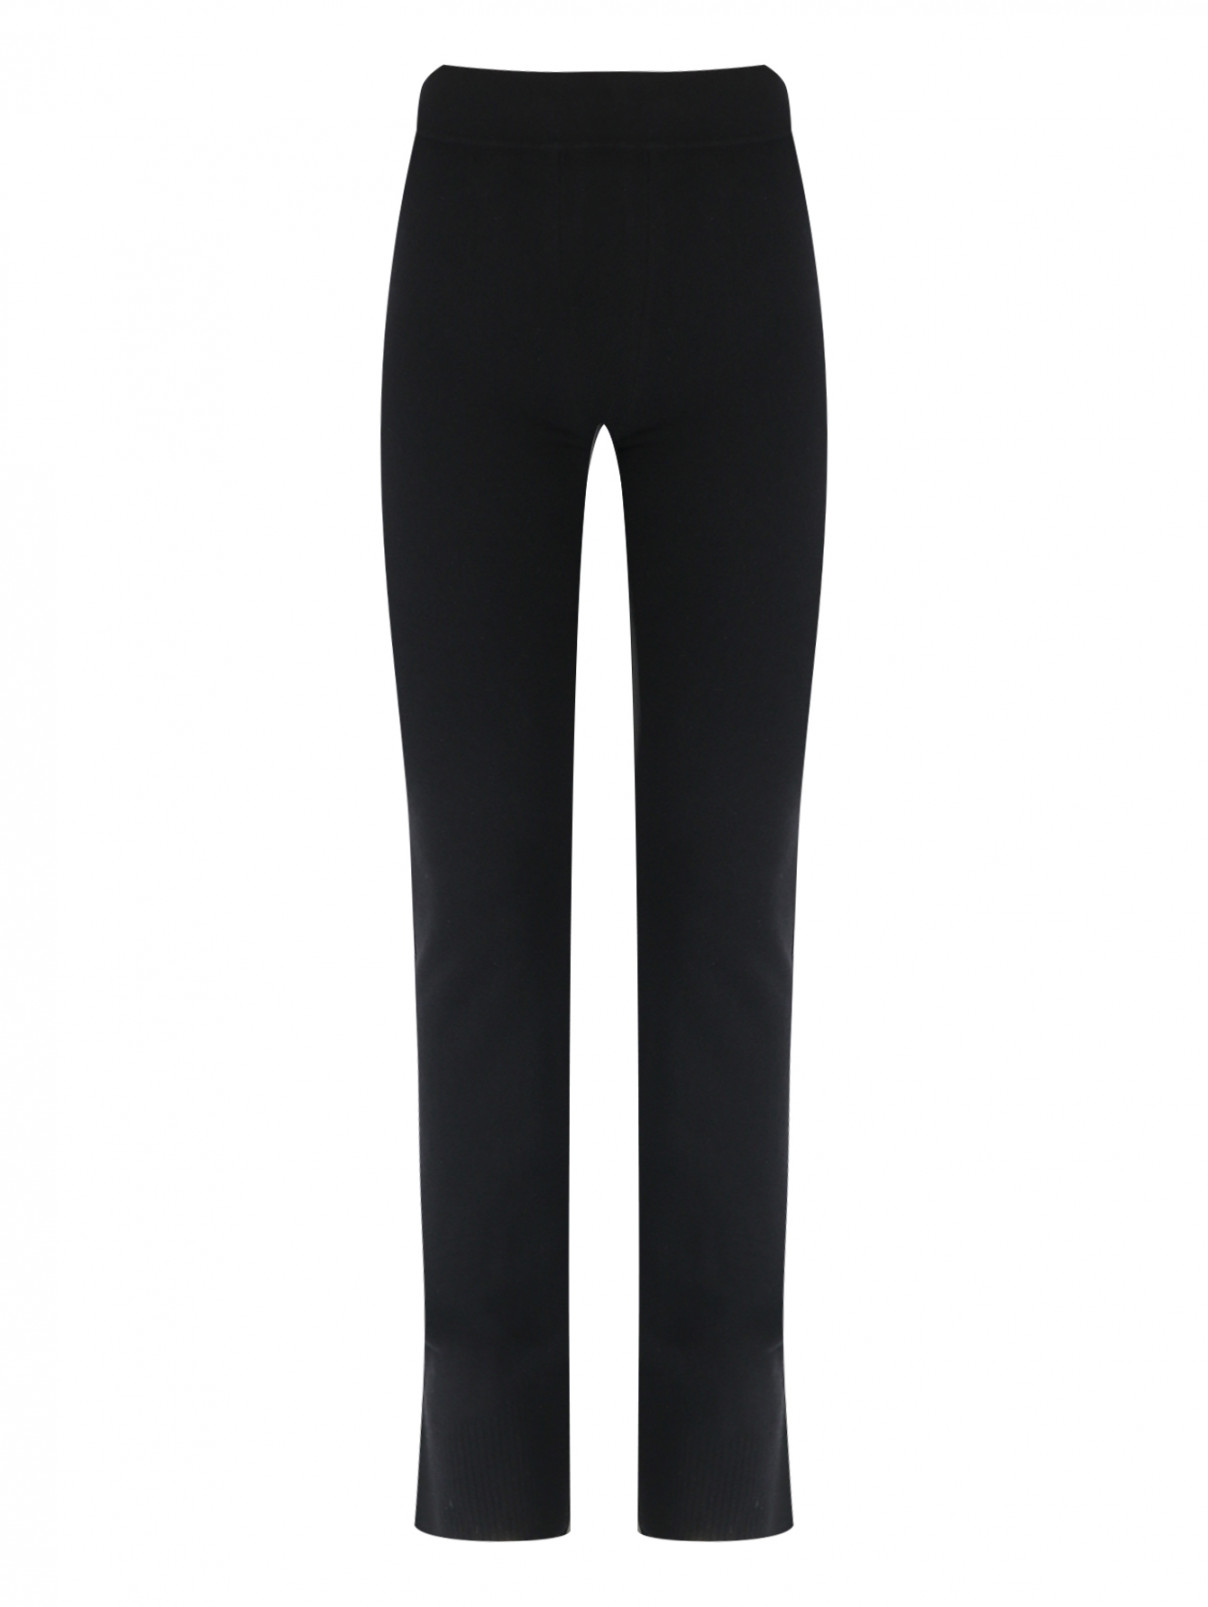 Трикотажные брюки на резинке Nina Ricci  –  Общий вид  – Цвет:  Черный